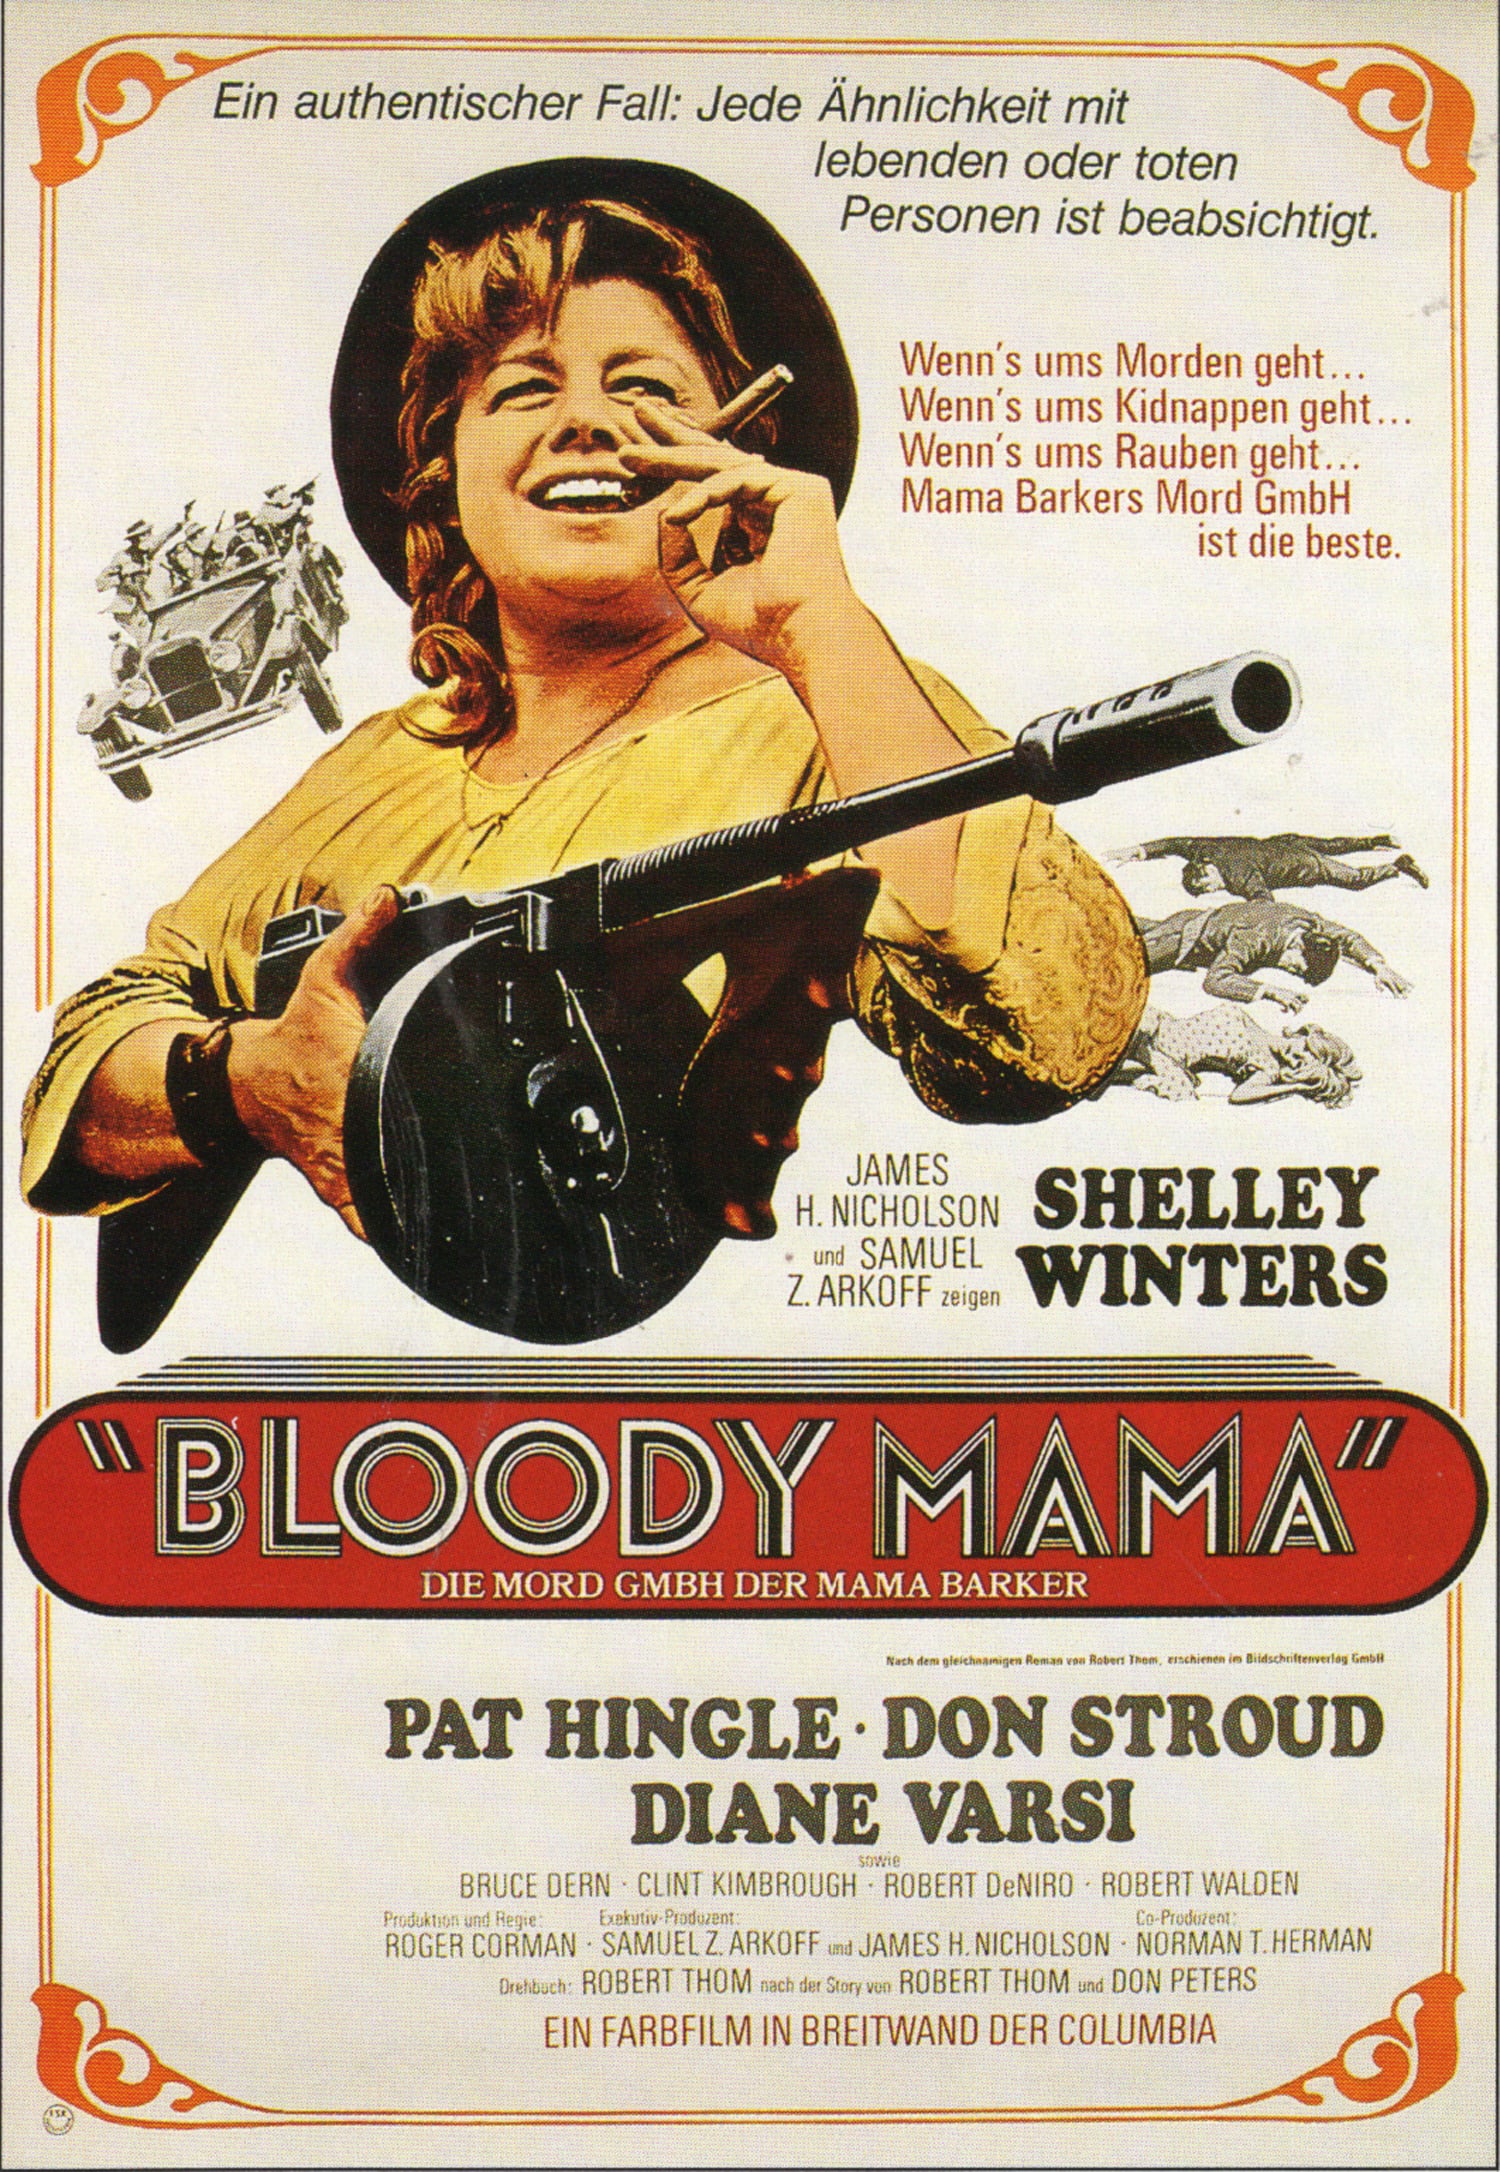 Plakat von "Bloody Mama"